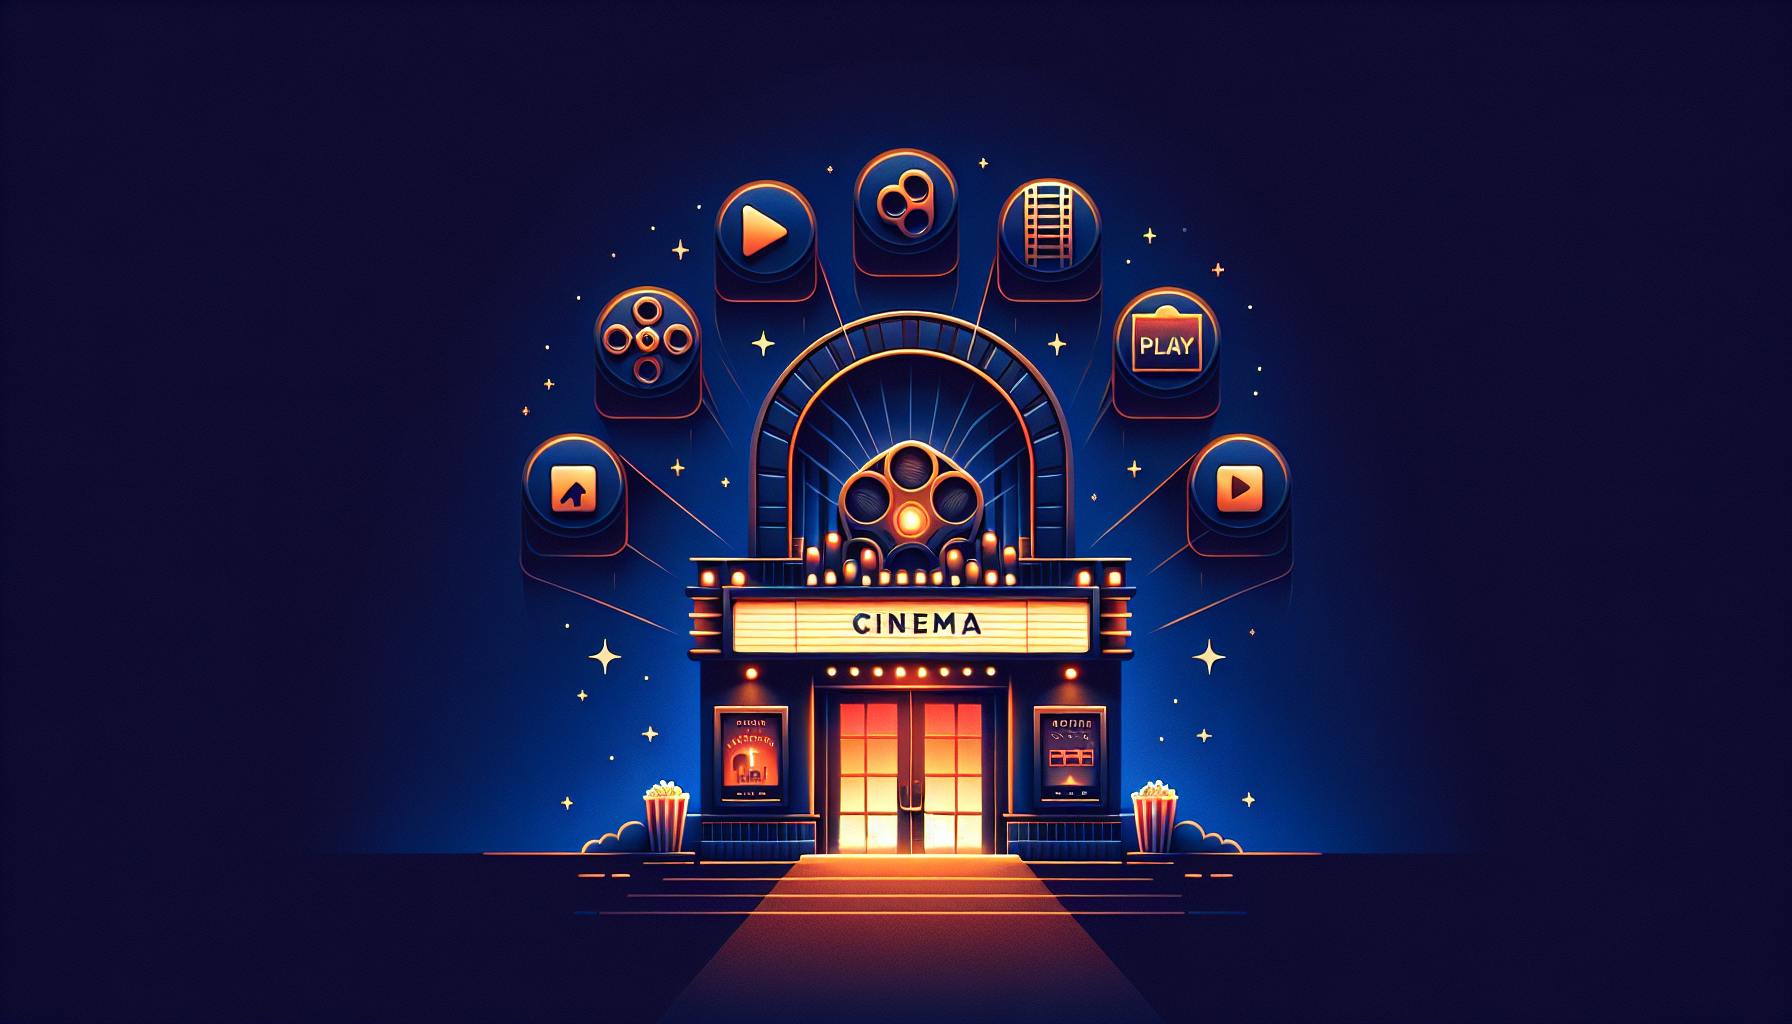 User-Friendly Cinema Website Design